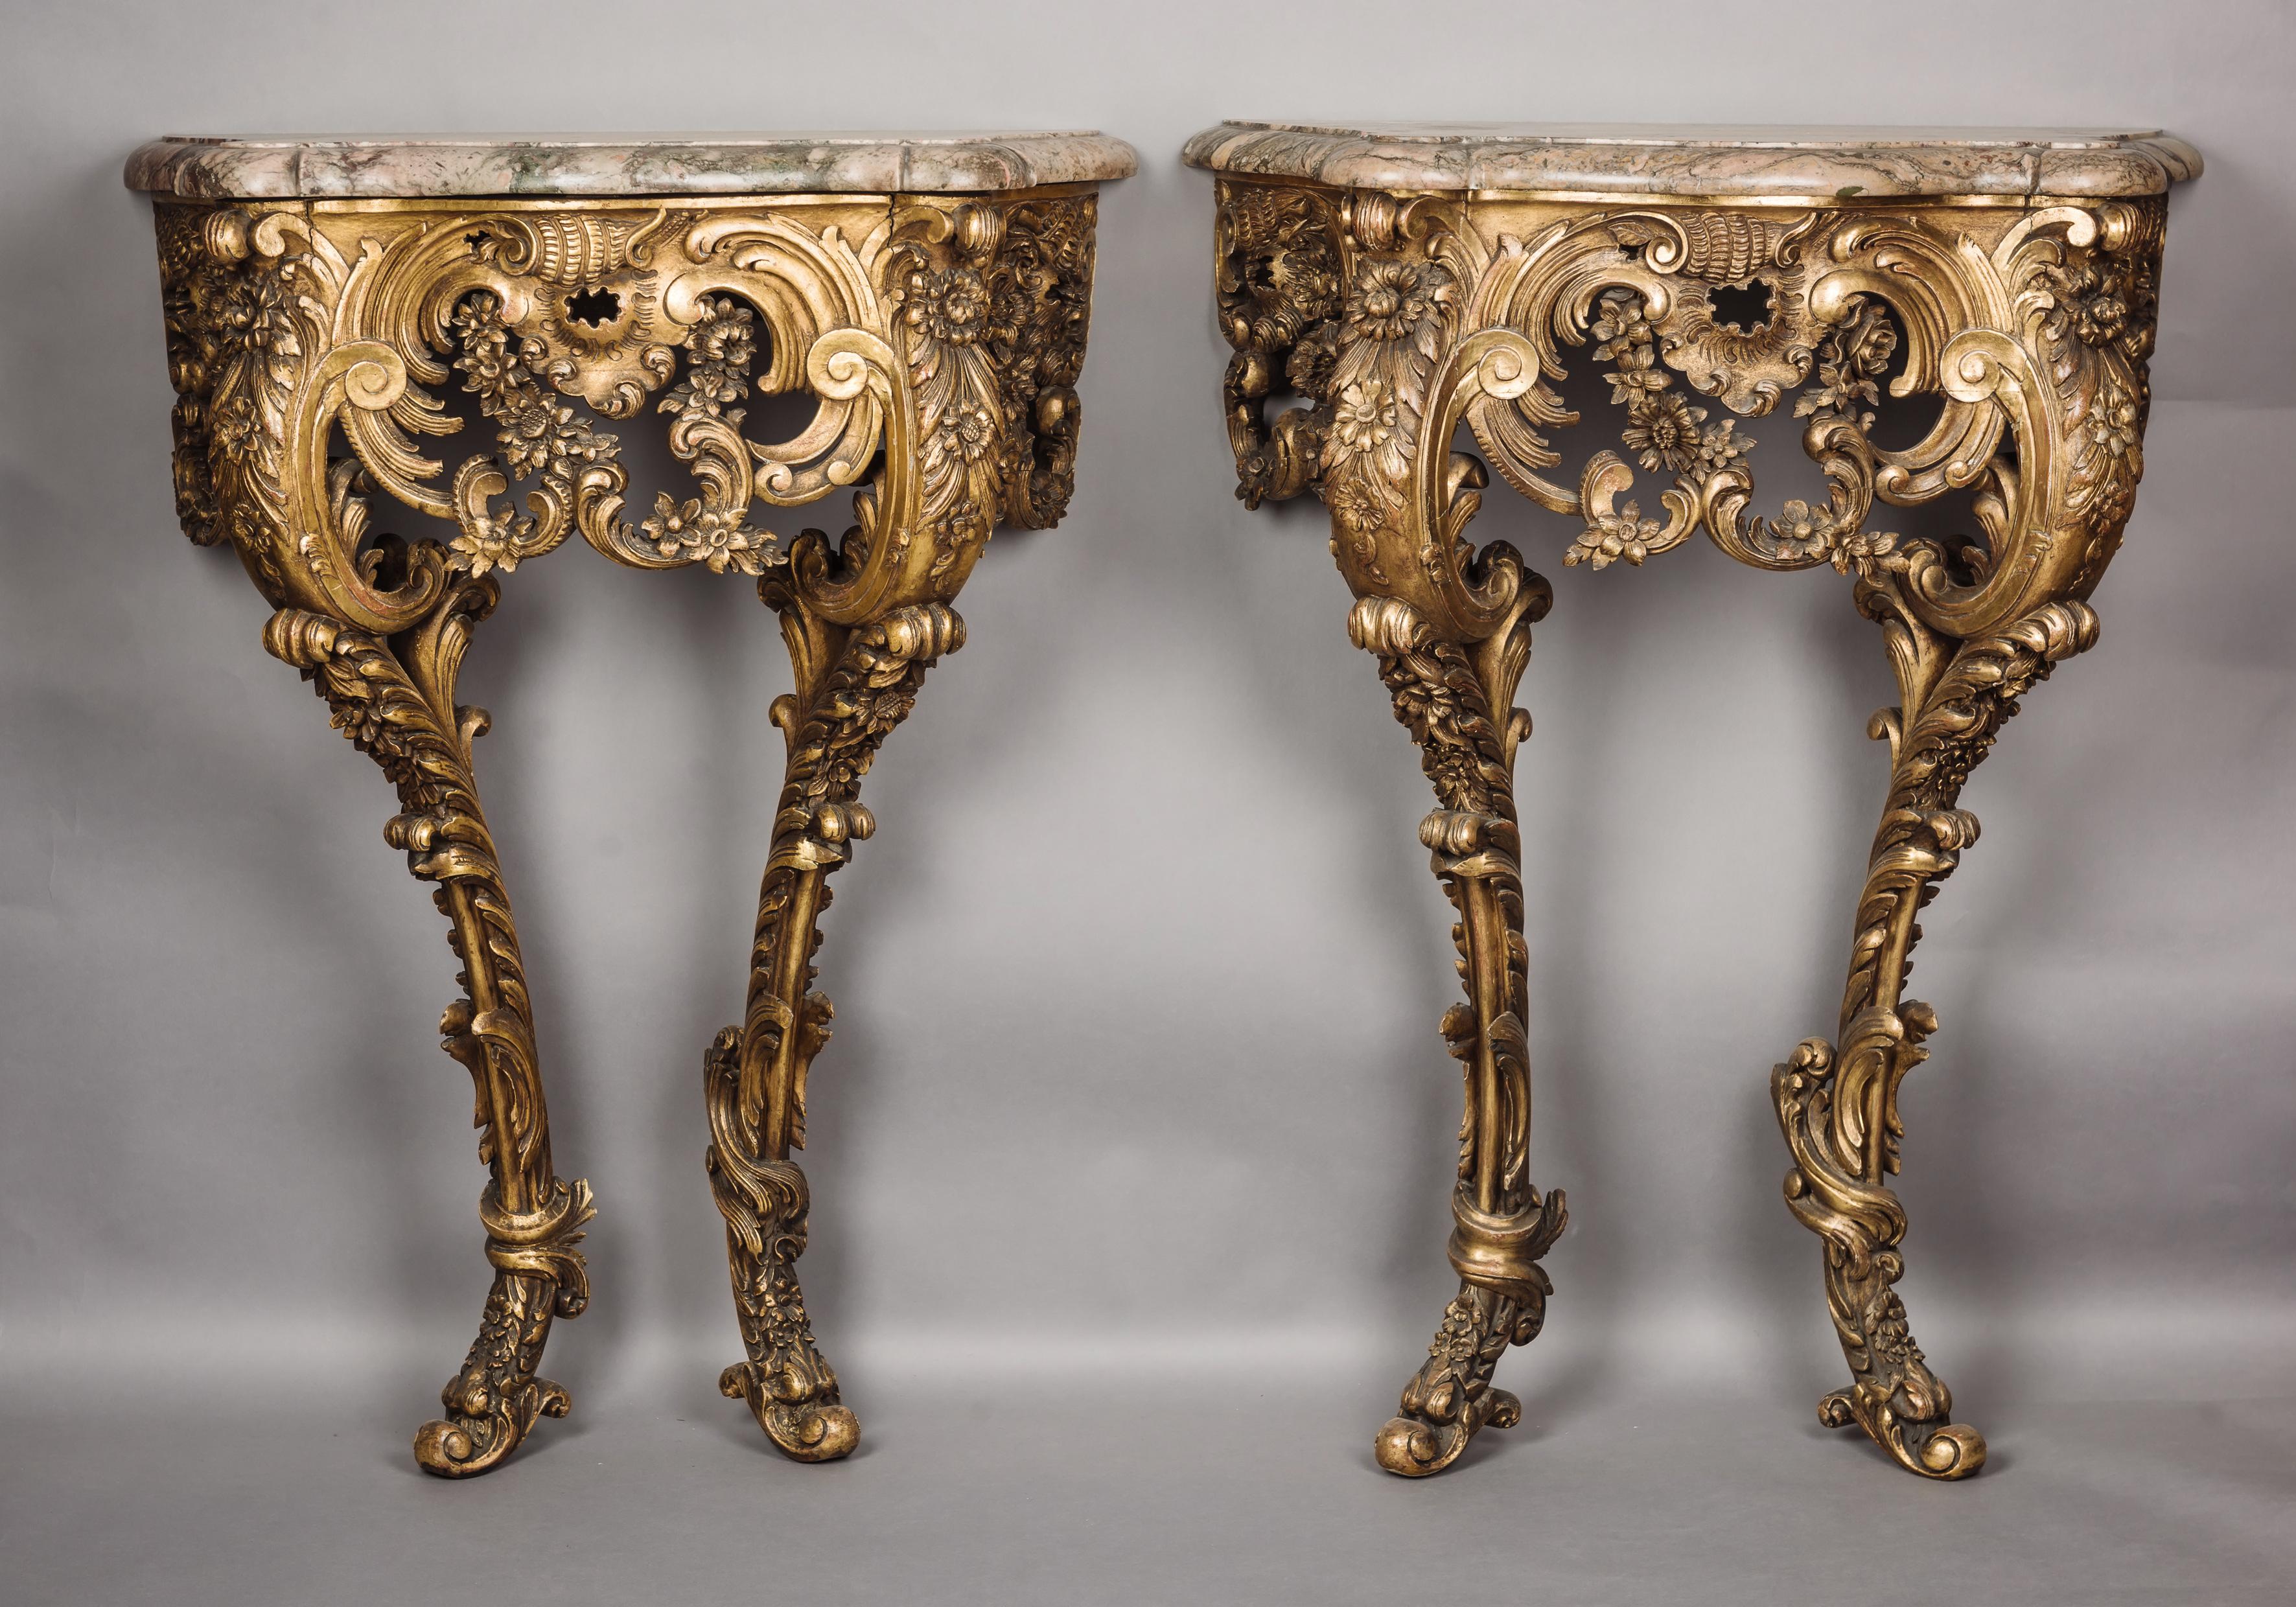 Ein ungewöhnliches Paar Konsolentische aus Giltholz im Petit Rococo-Stil. 

Französisch, ca. 1860. 

Die Konsolentische haben jeweils eine geformte Marmorplatte mit serpentinenförmigem Umriss über einem entsprechenden Fries aus vergoldetem Holz,